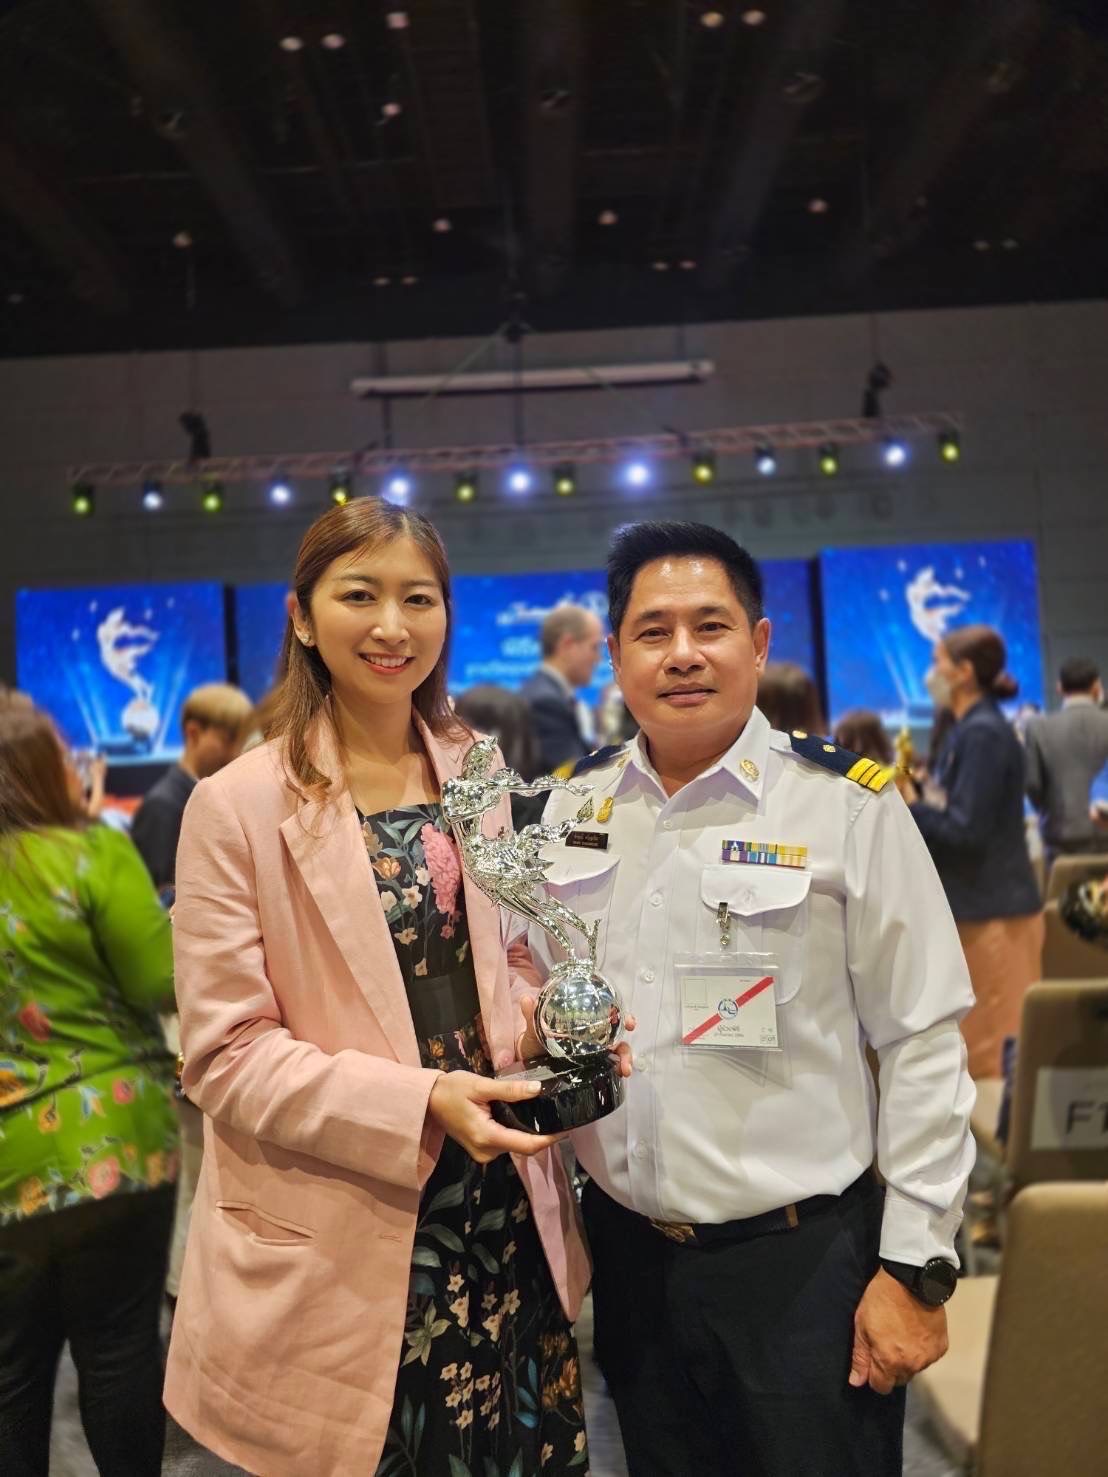 เพ ลา เพลิน บุรีรัมย์ คว้ารางวัลกินรี แหล่งท่องเที่ยวเชิงเรียนรู้ Thailand Tourism Awards ครั้งที่ 14 มุ่งสร้างการท่องเที่ยวเชิงเรียนรู้แนวใหม่ ตอบโจทย์การเรียนรู้ของทุกเพศ ทุกวัย ครบจบในที่เดียว